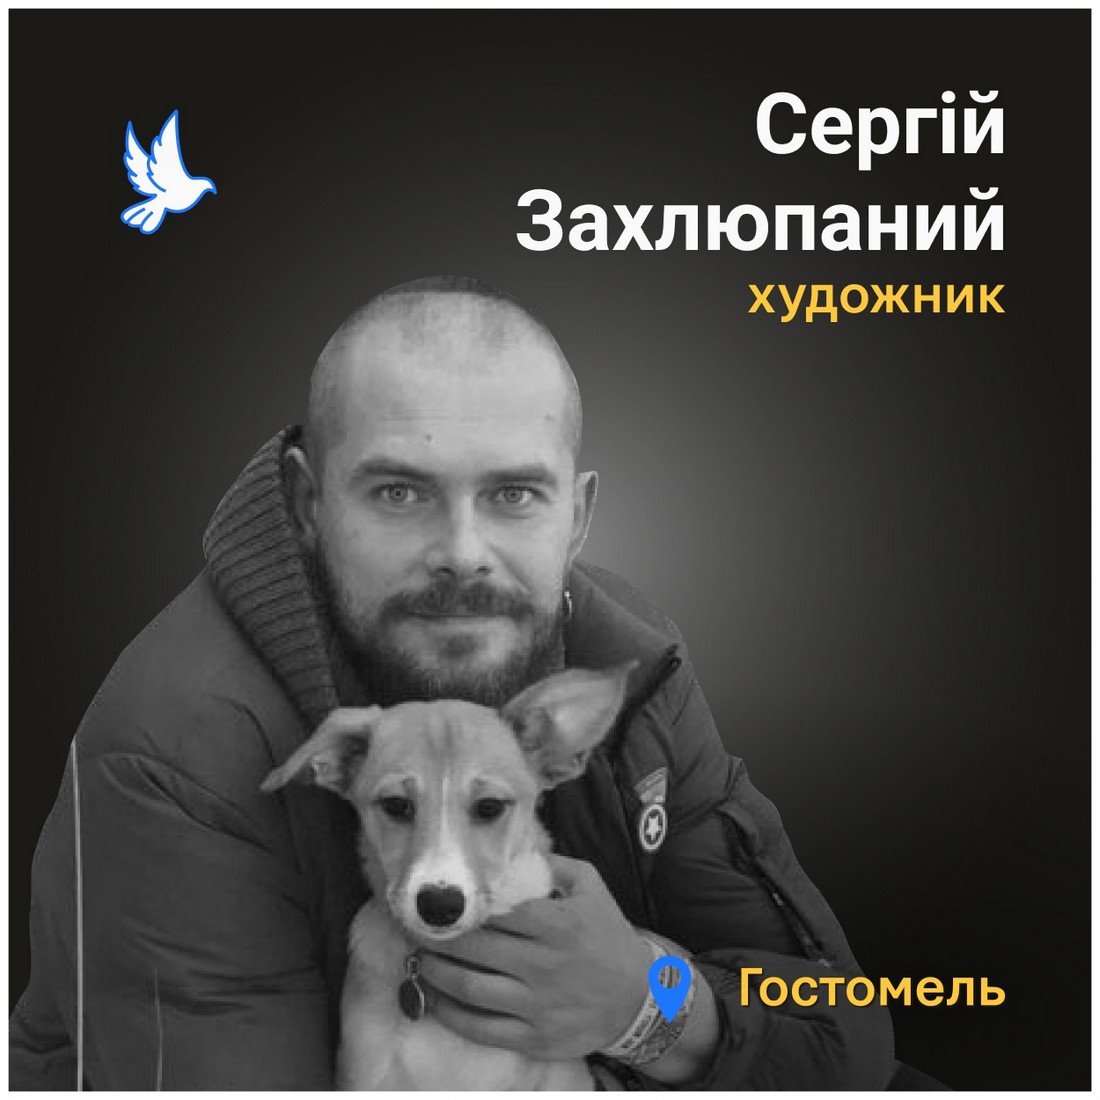 Меморіал: вбиті росією. Сергій Захлюпаний, 38 років, Гостомель, березень